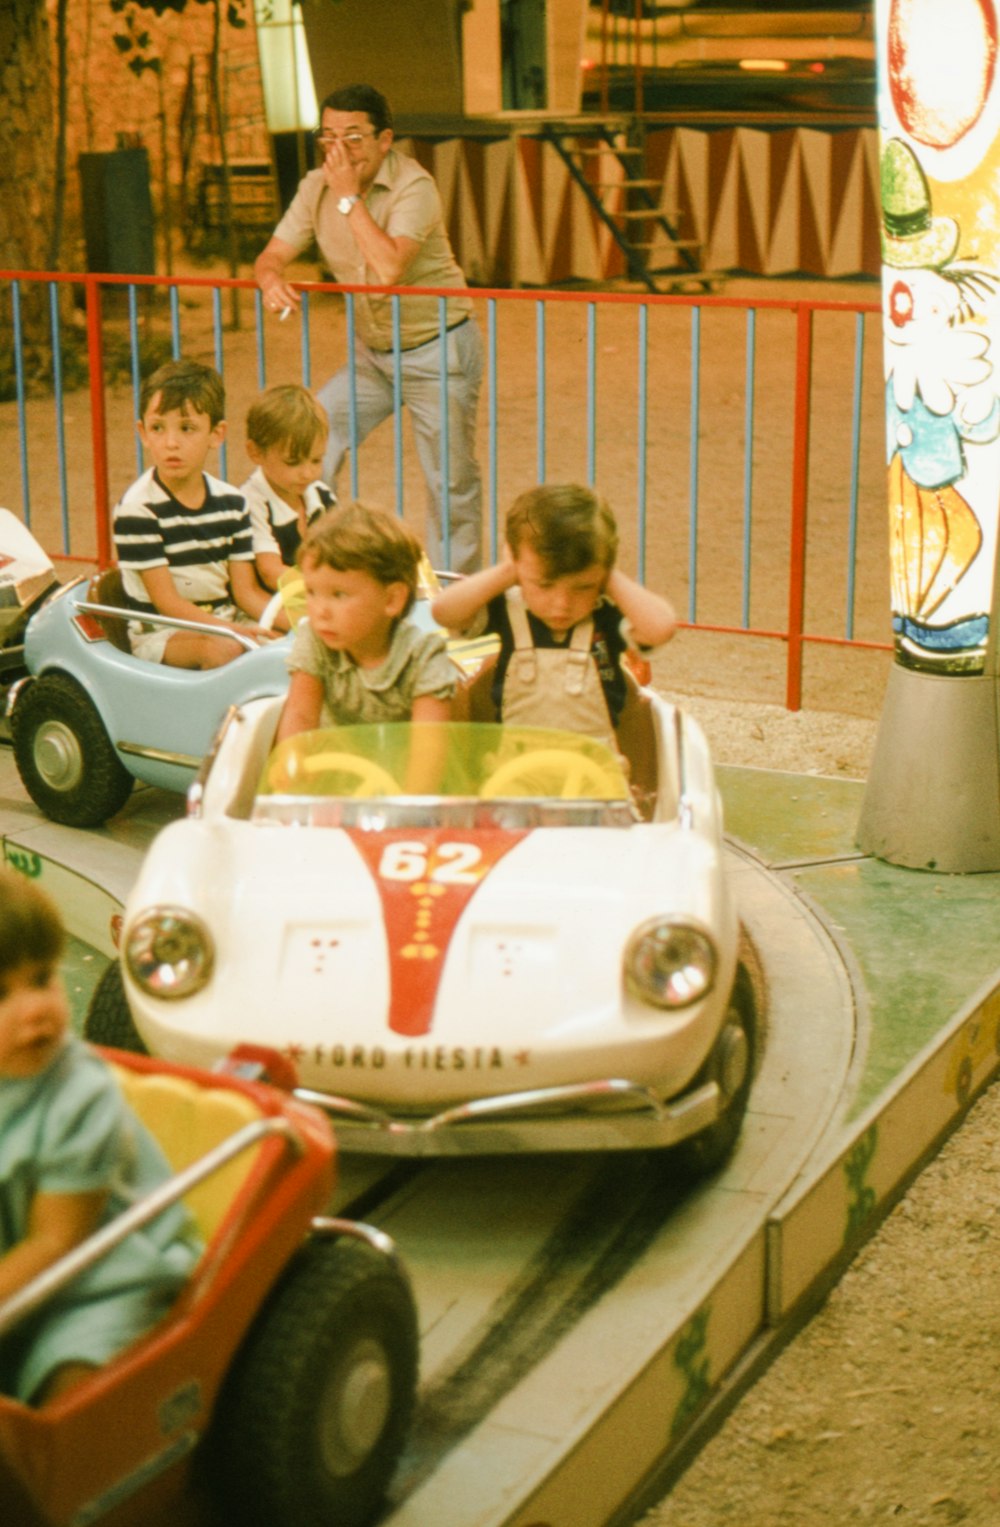 Eine Gruppe kleiner Kinder, die auf einem Spielzeugauto fahren